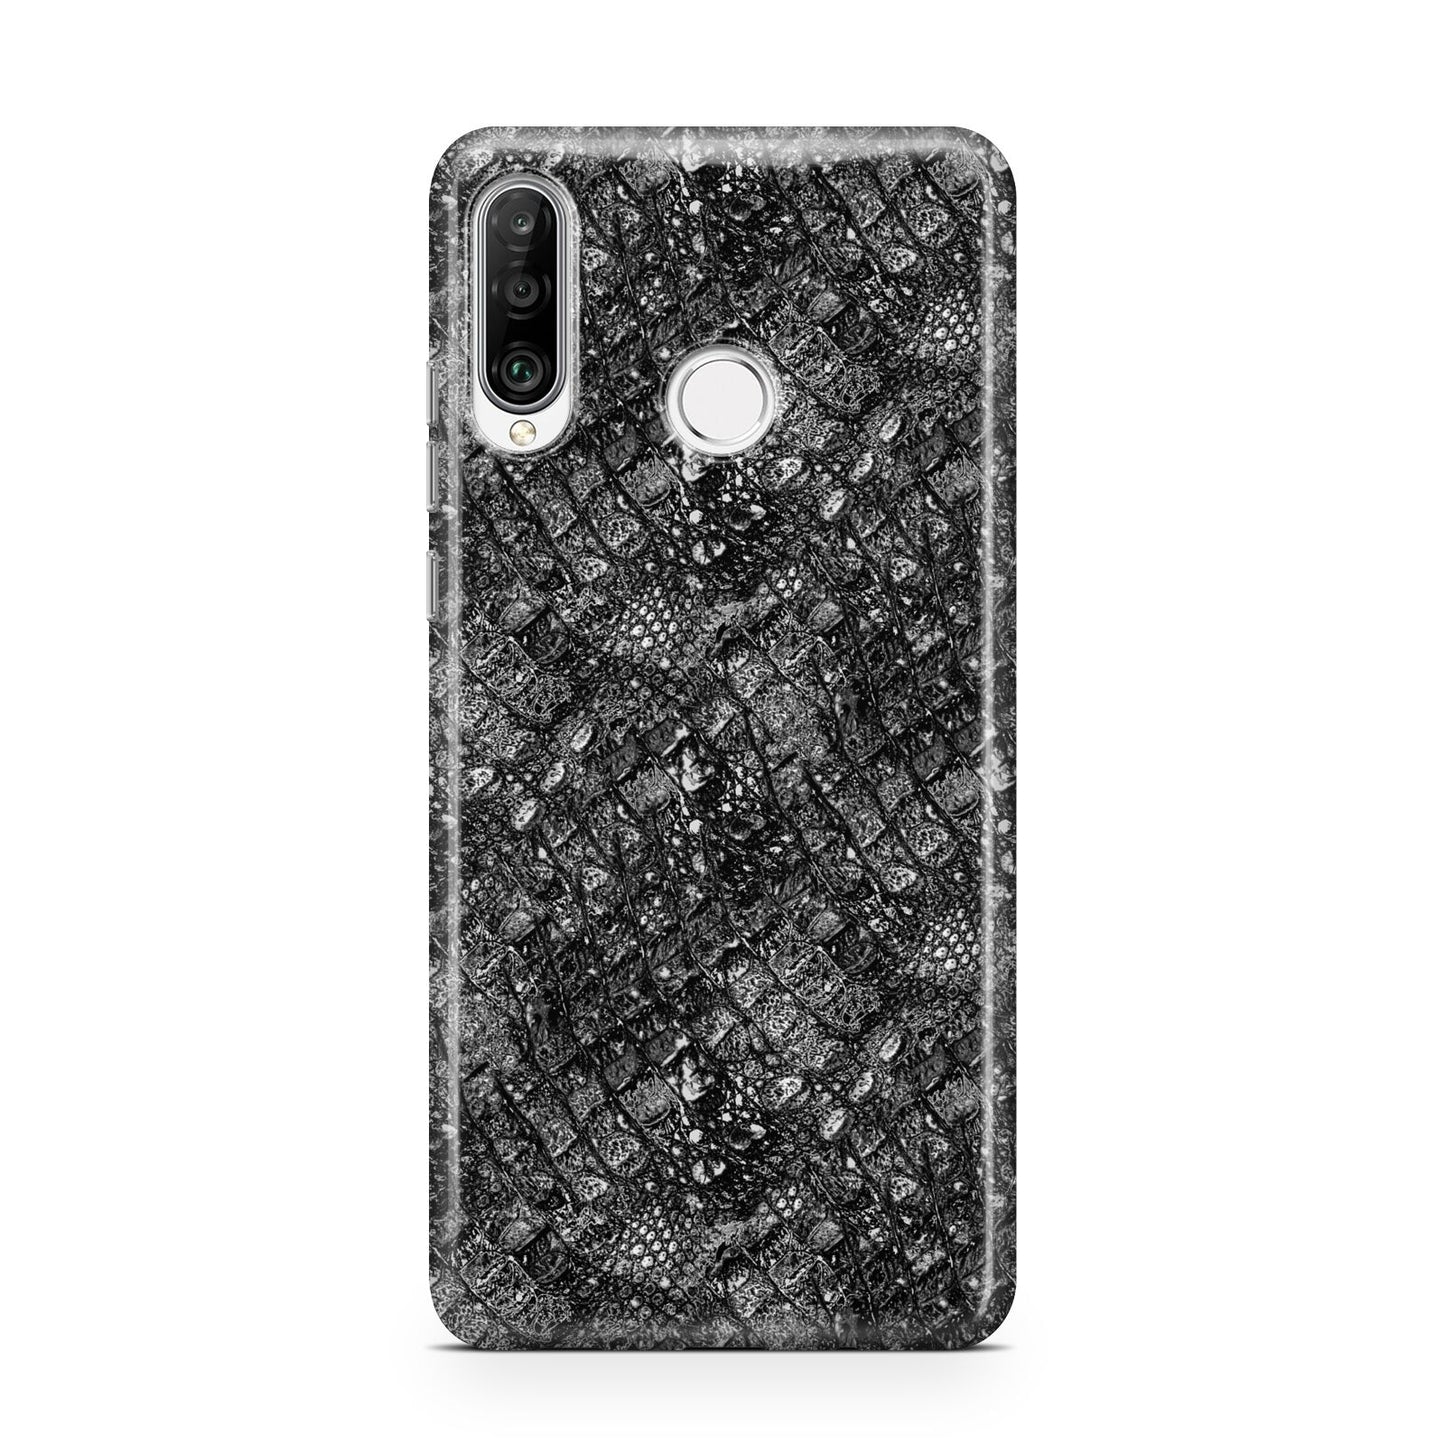 Snakeskin Design Huawei P30 Lite Phone Case